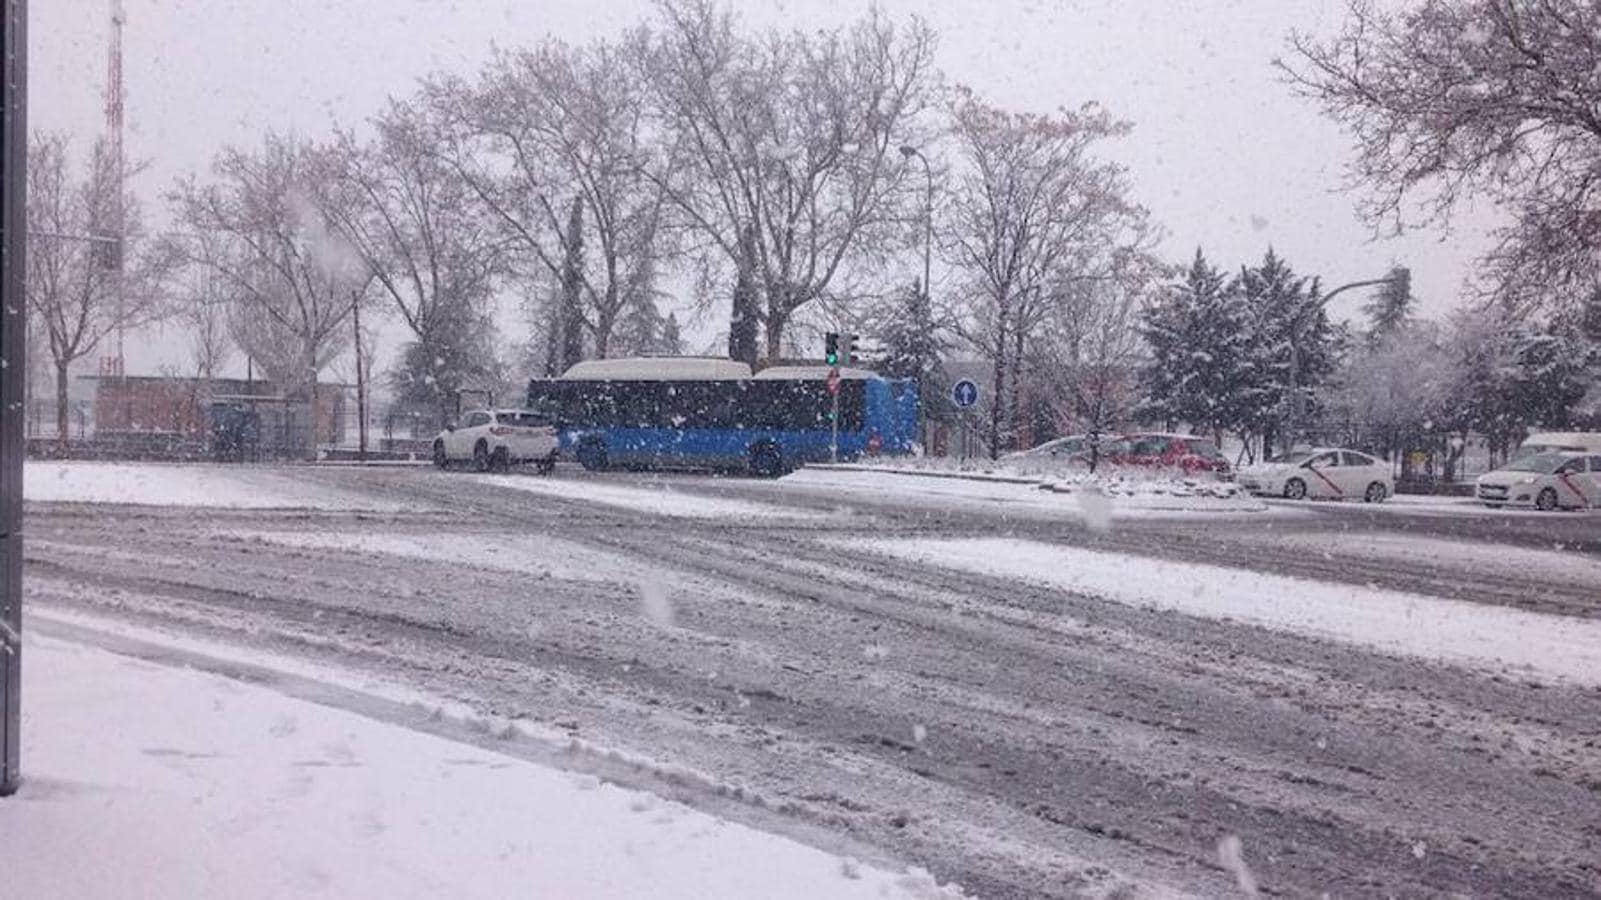 7.. El autobús transita con dificultad por la nieve